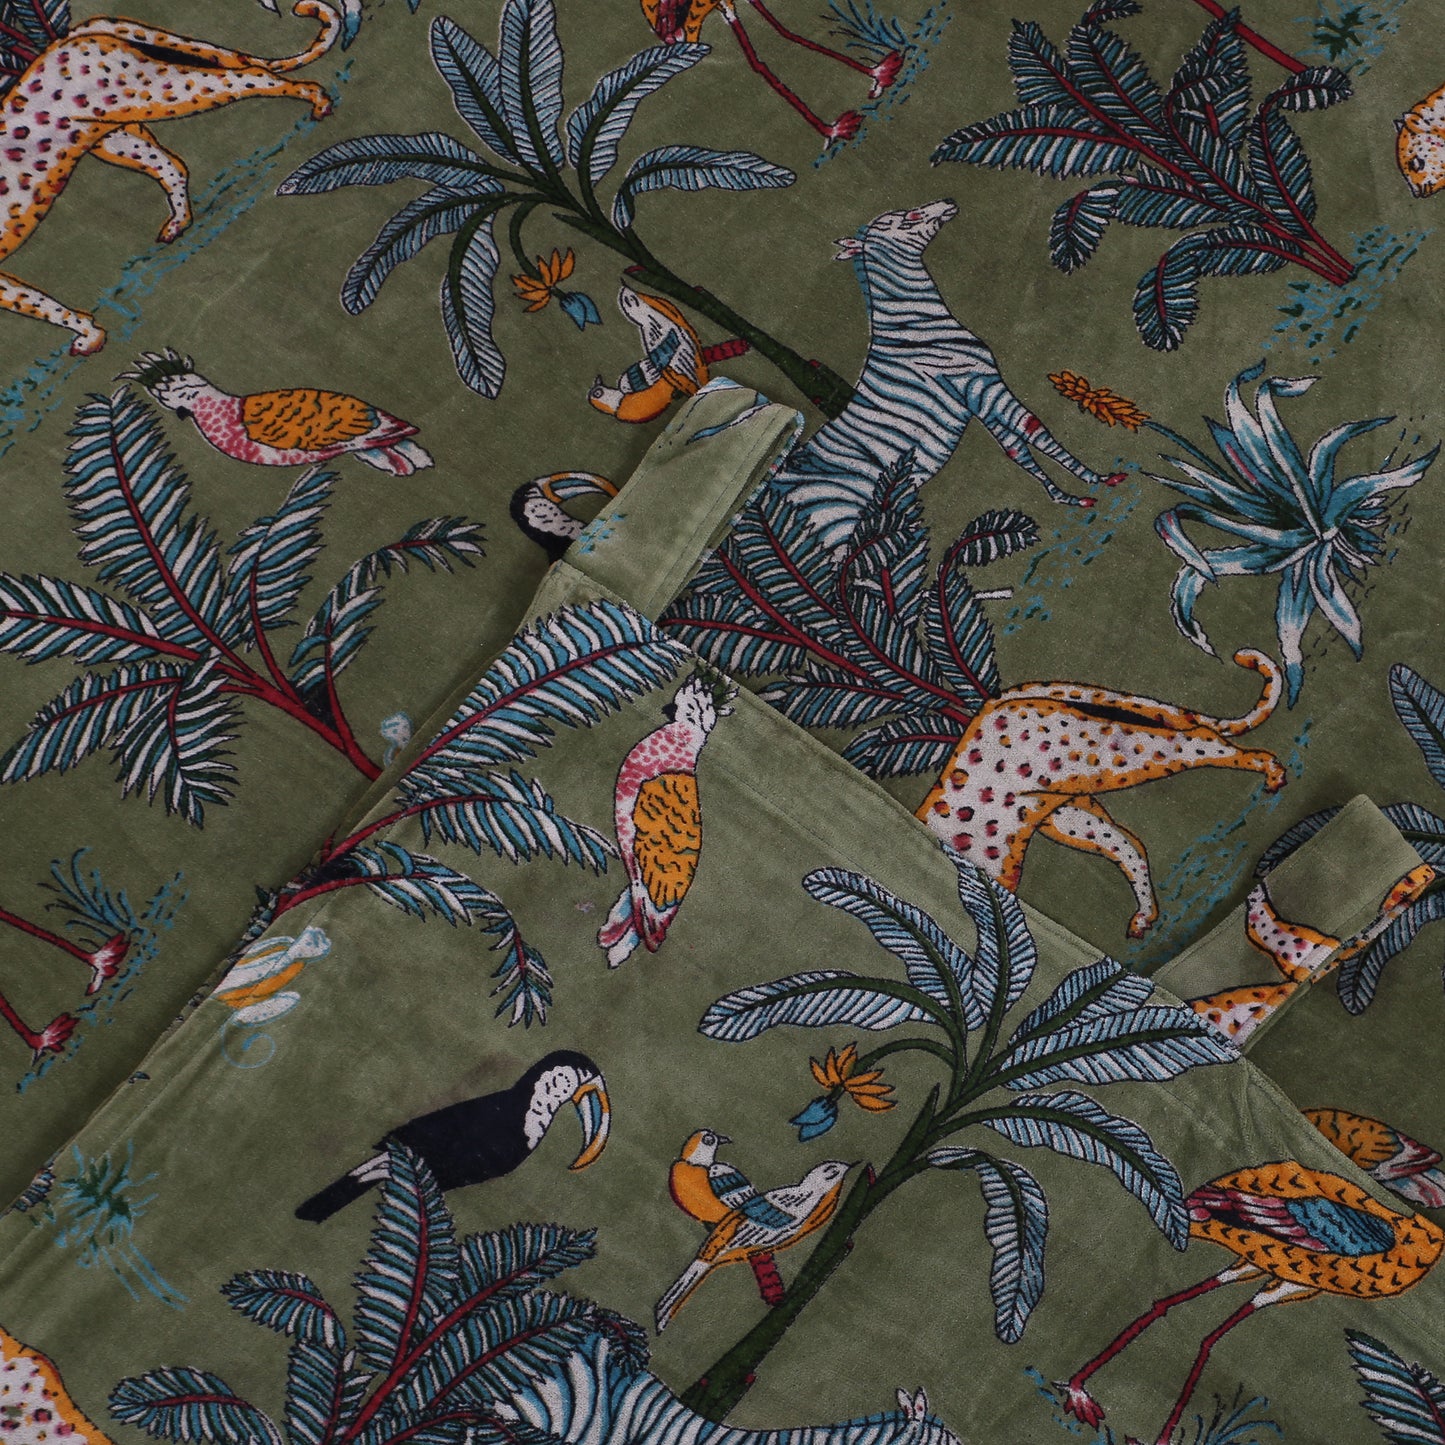 Jungle Print 1 Velvet Curtain- Olive Green